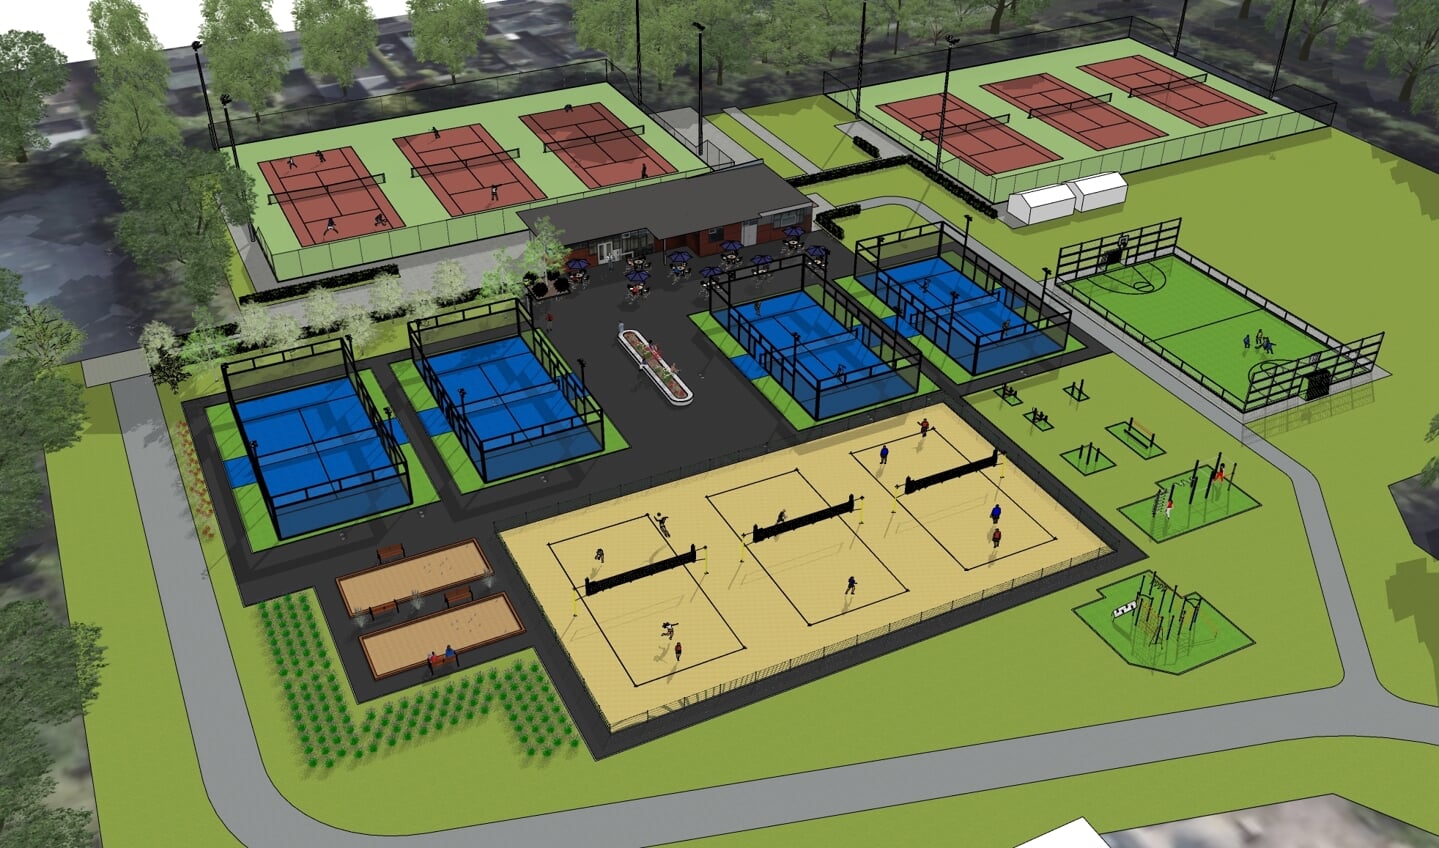 Een schets van tennisvereniging De Leechkamp: beachvolleybal op de voorgrond, padelbanen in het midden, tennisbanen achteraan, rechts voor jeu de boules en rechts een basketbalveld.